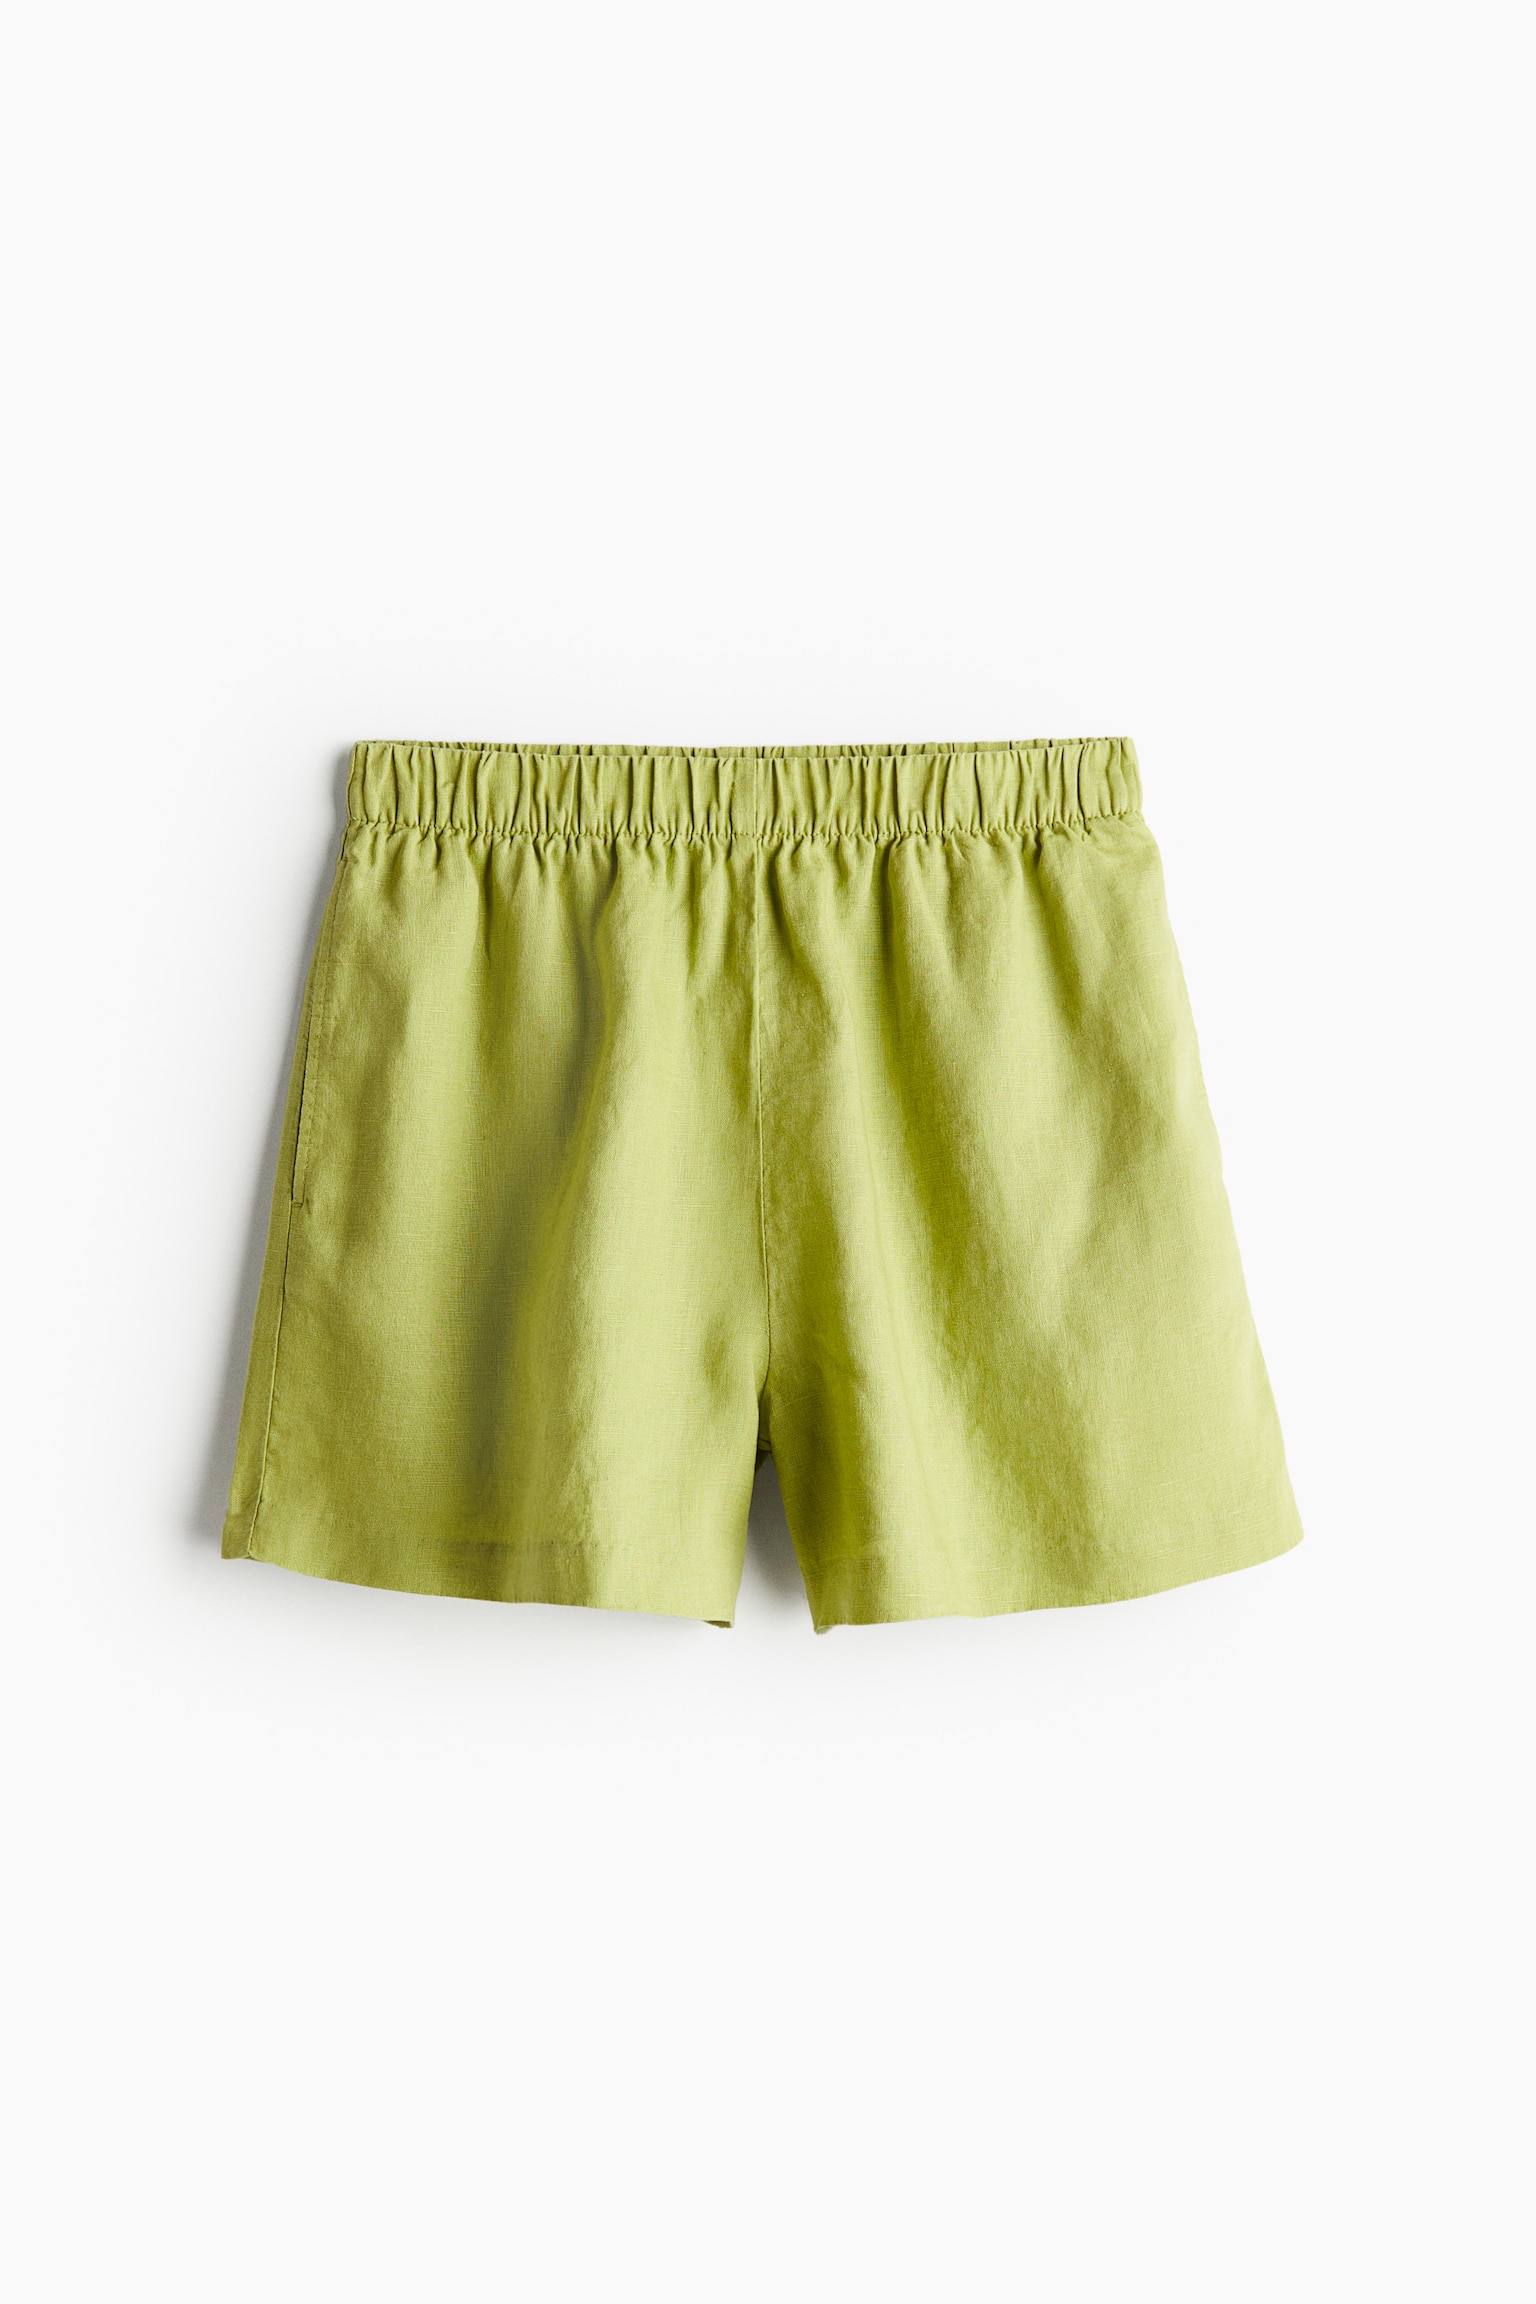 Pull-on-Shorts aus Leinen - Grün/Naturweiß/Schwarz/Blau/Gestreift - 2